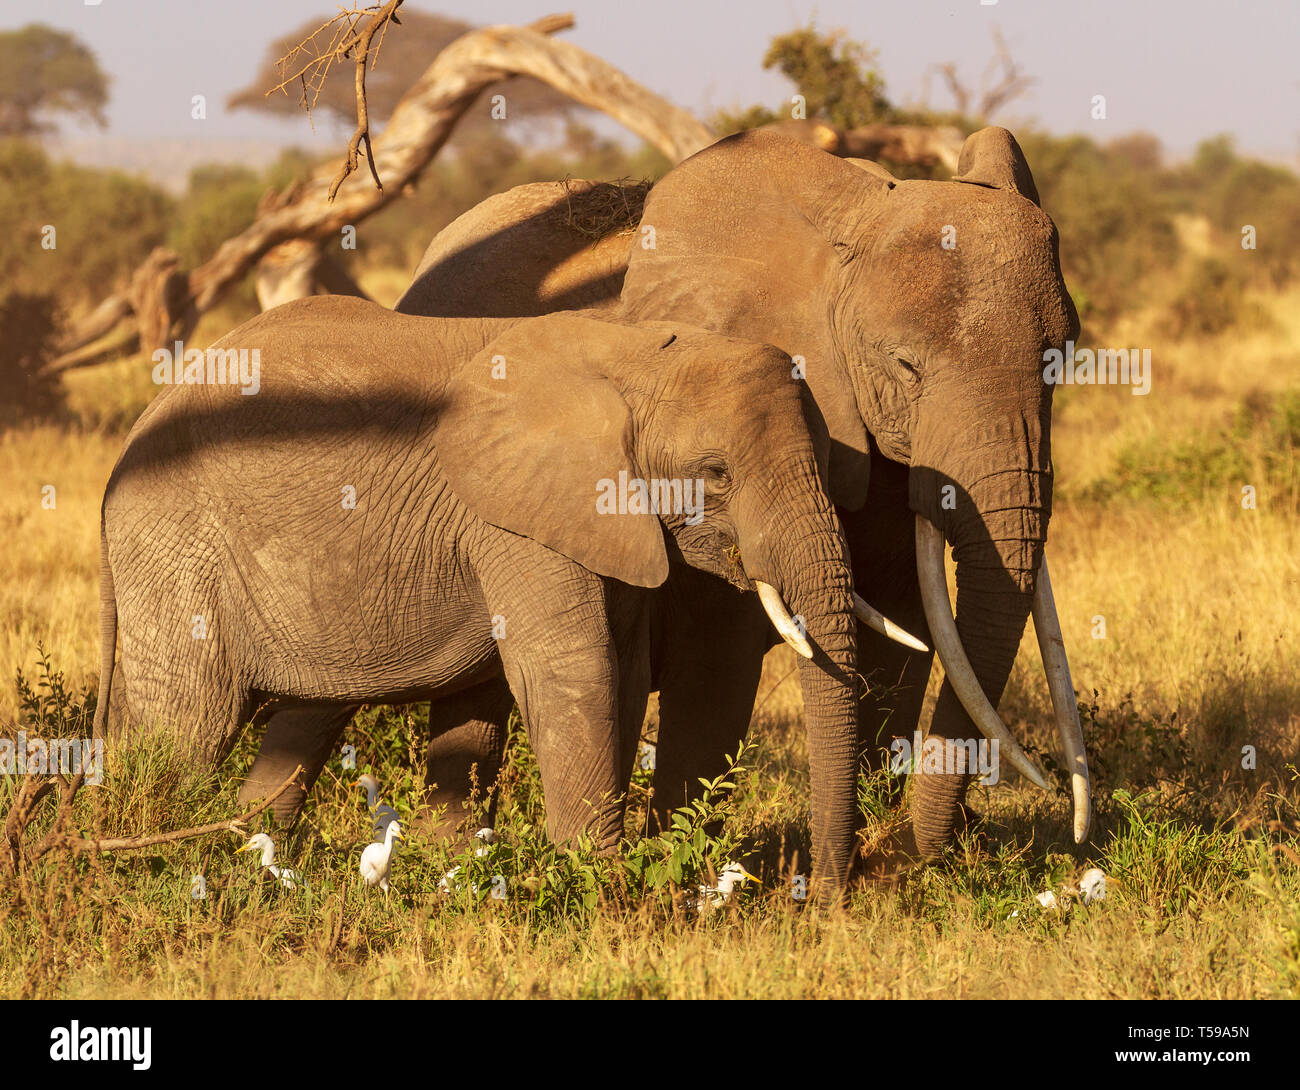 Due elefanti (Loxodonta africana) con lunghe zecche si avvicinano nel Parco Nazionale di Amboseli, Kenya, Africa. Calda giornata di sole in vacanza safari. Foto Stock